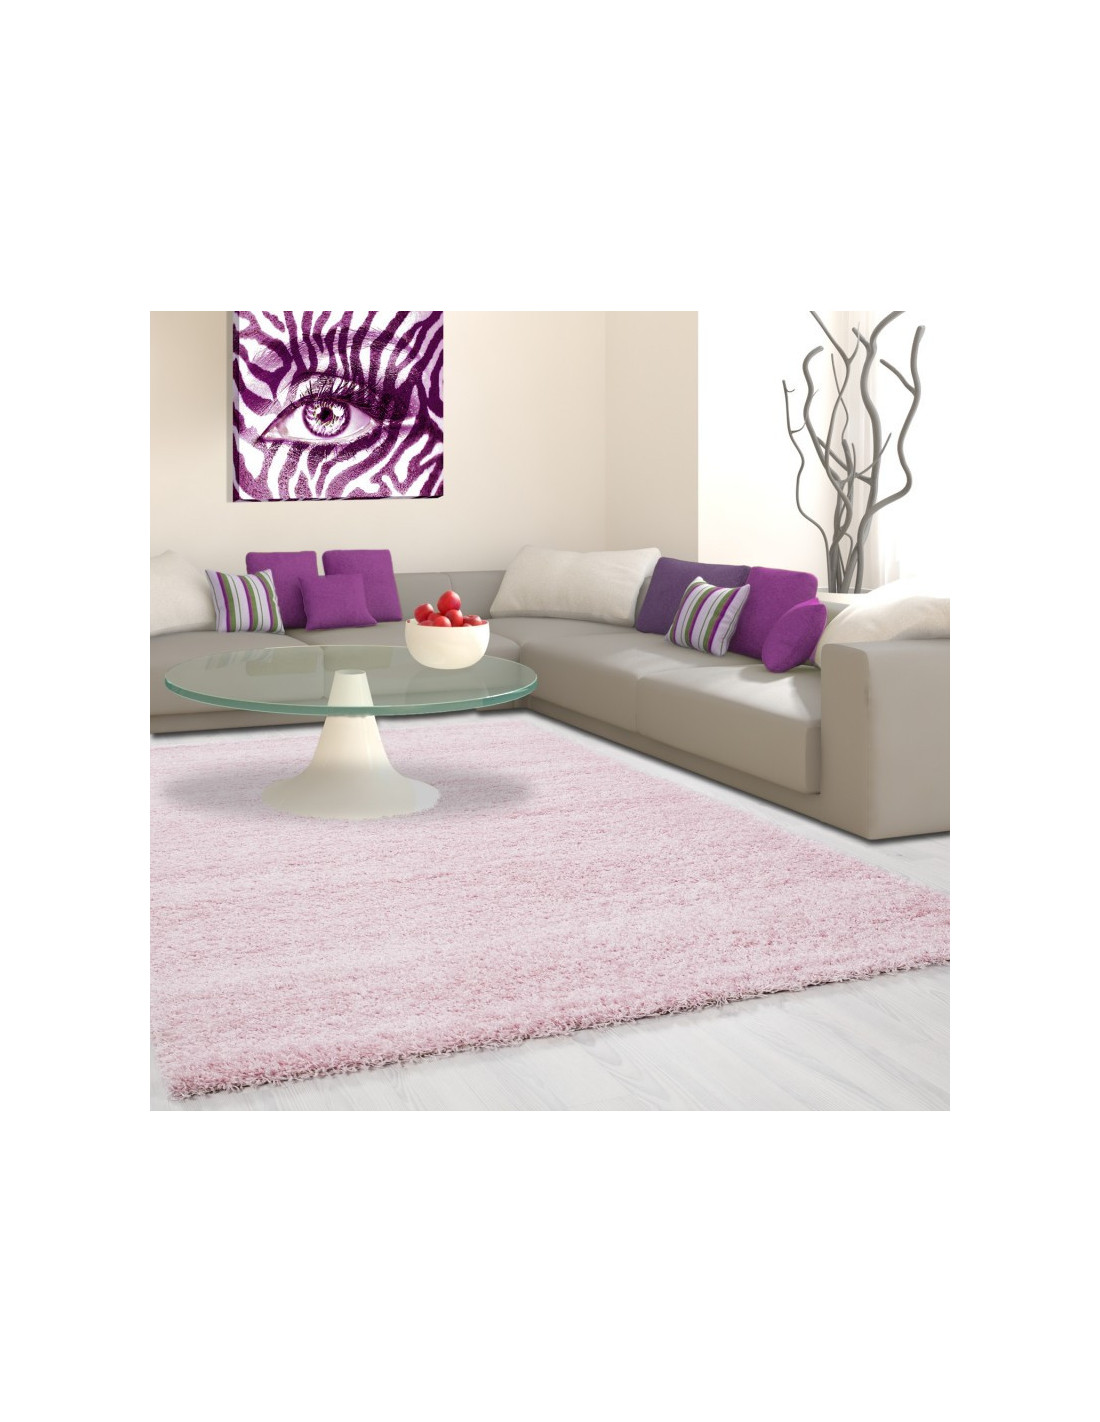 Shaggy carpet, pile height 3cm, uni-color pink